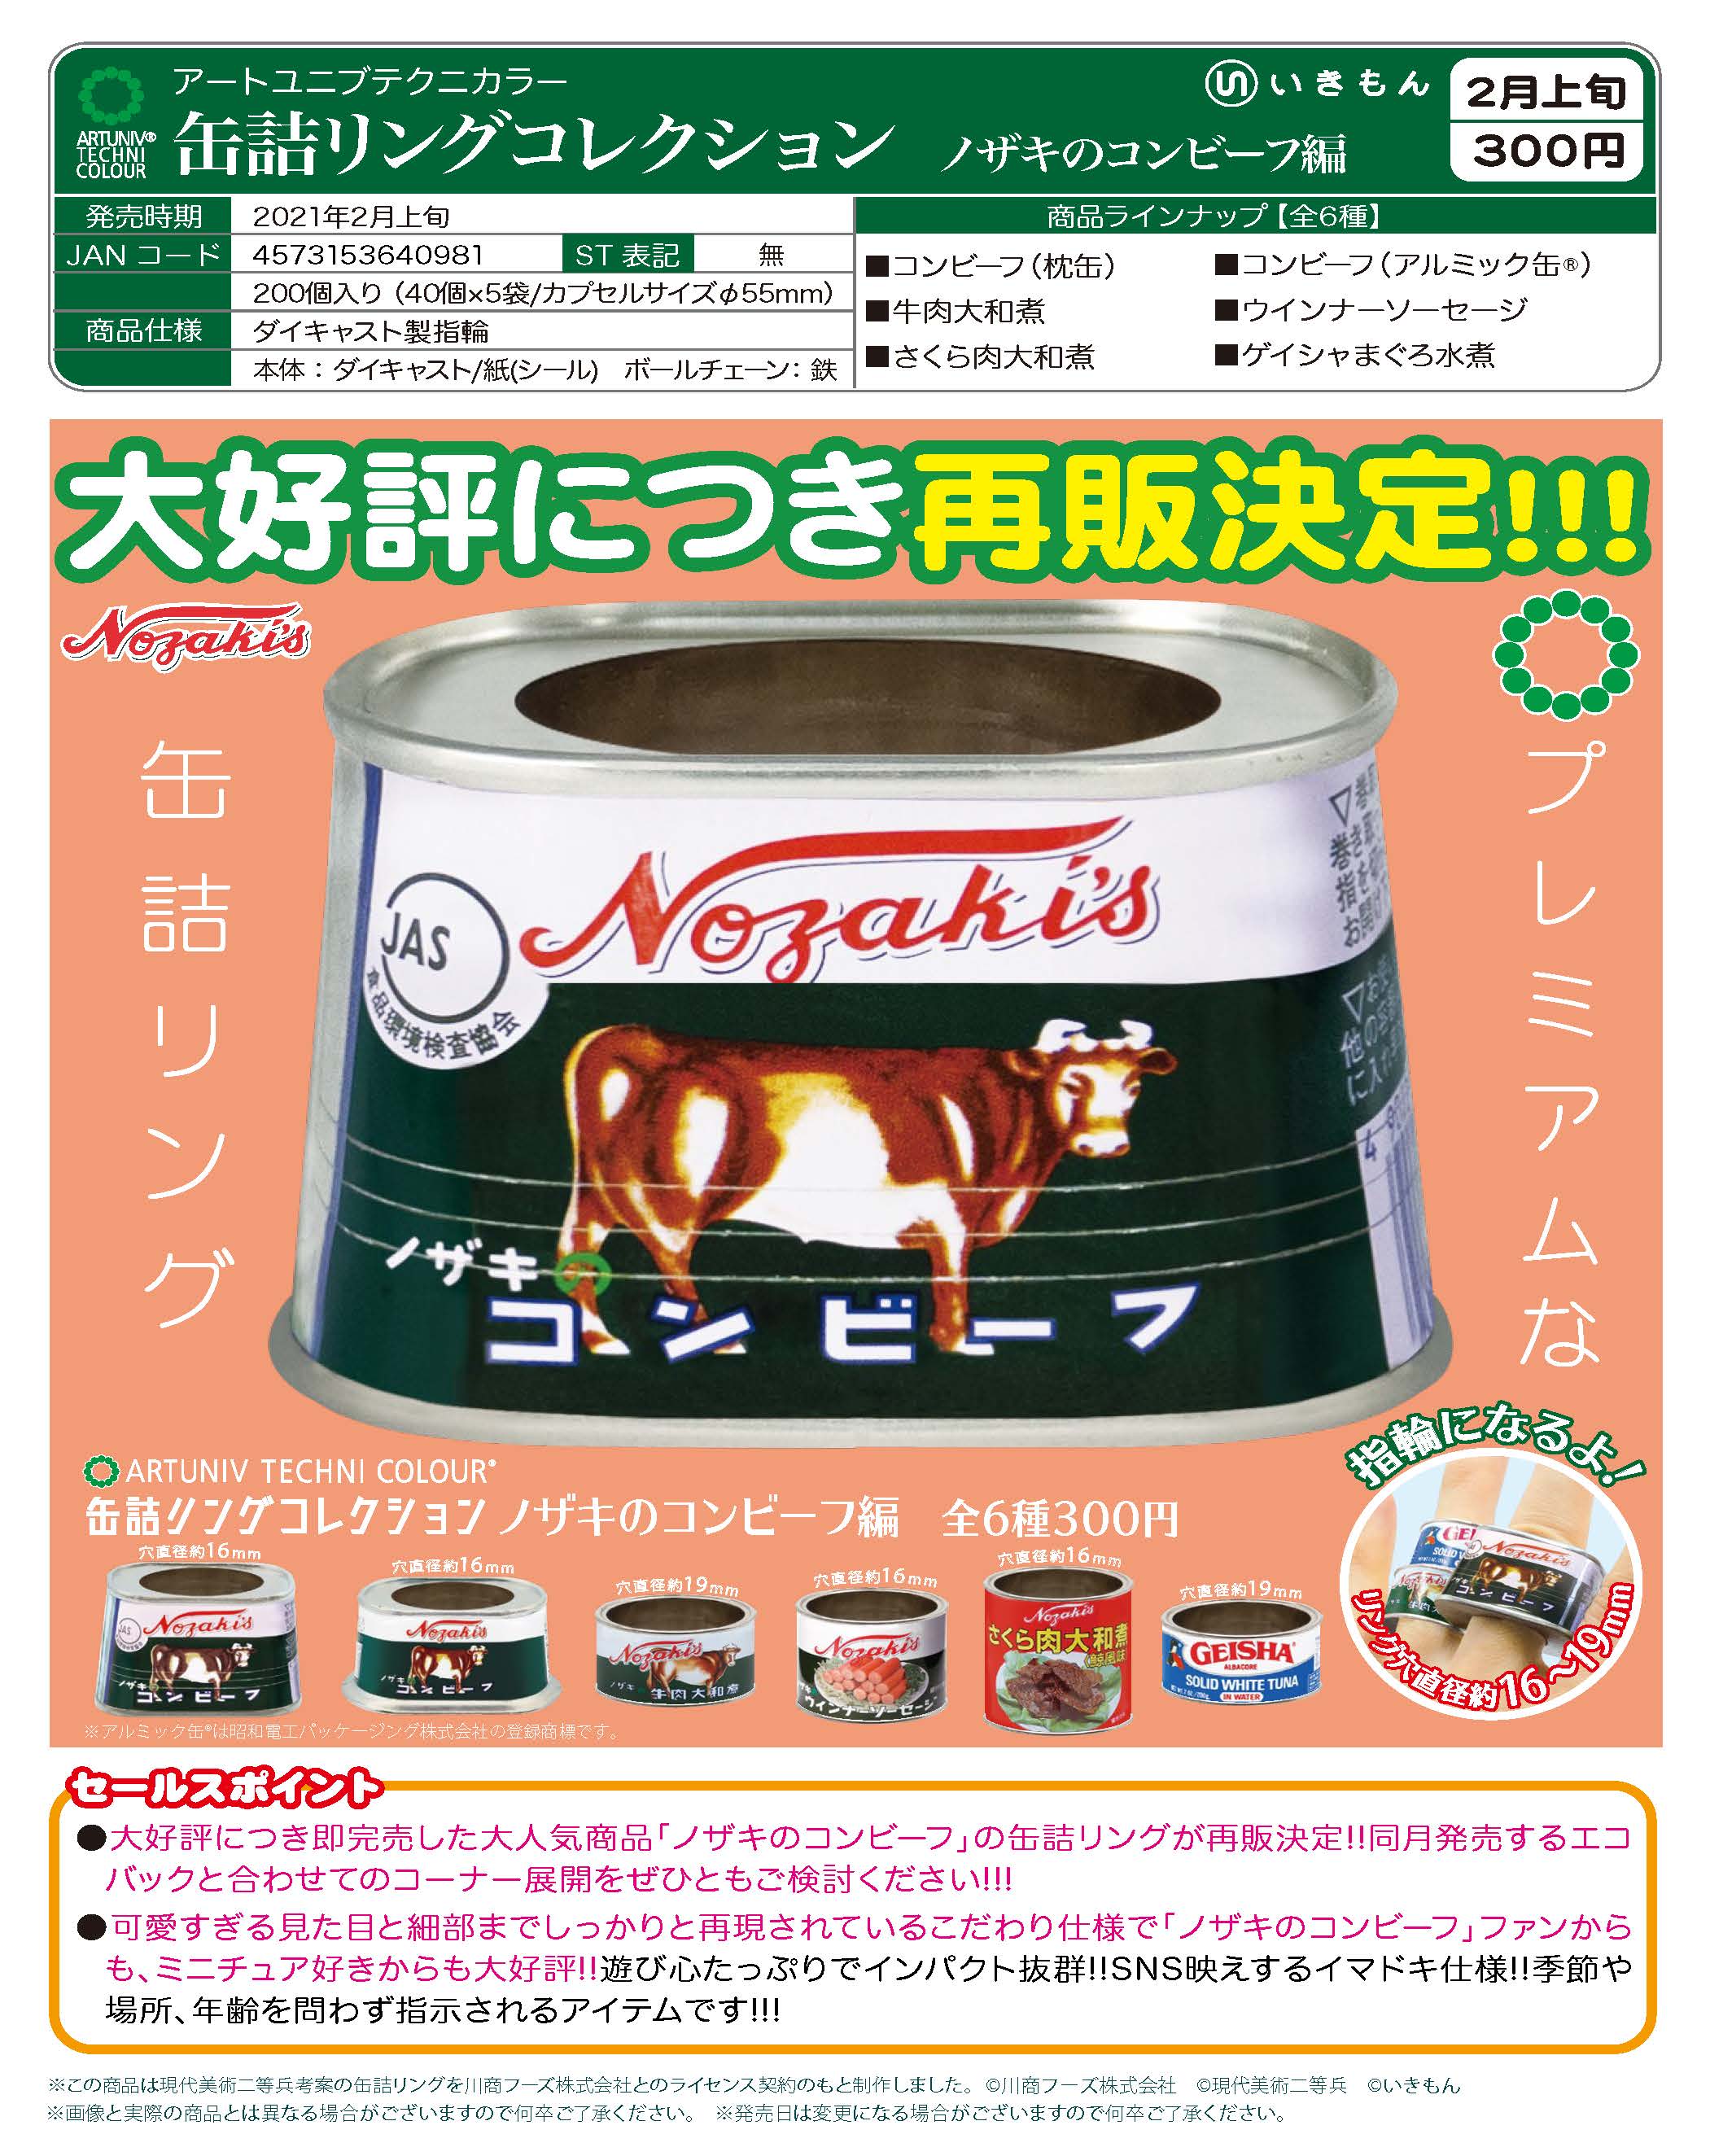 アートユニブテクニカラー 缶詰リングコレクション ノザキのコンビーフ編(40個入り)